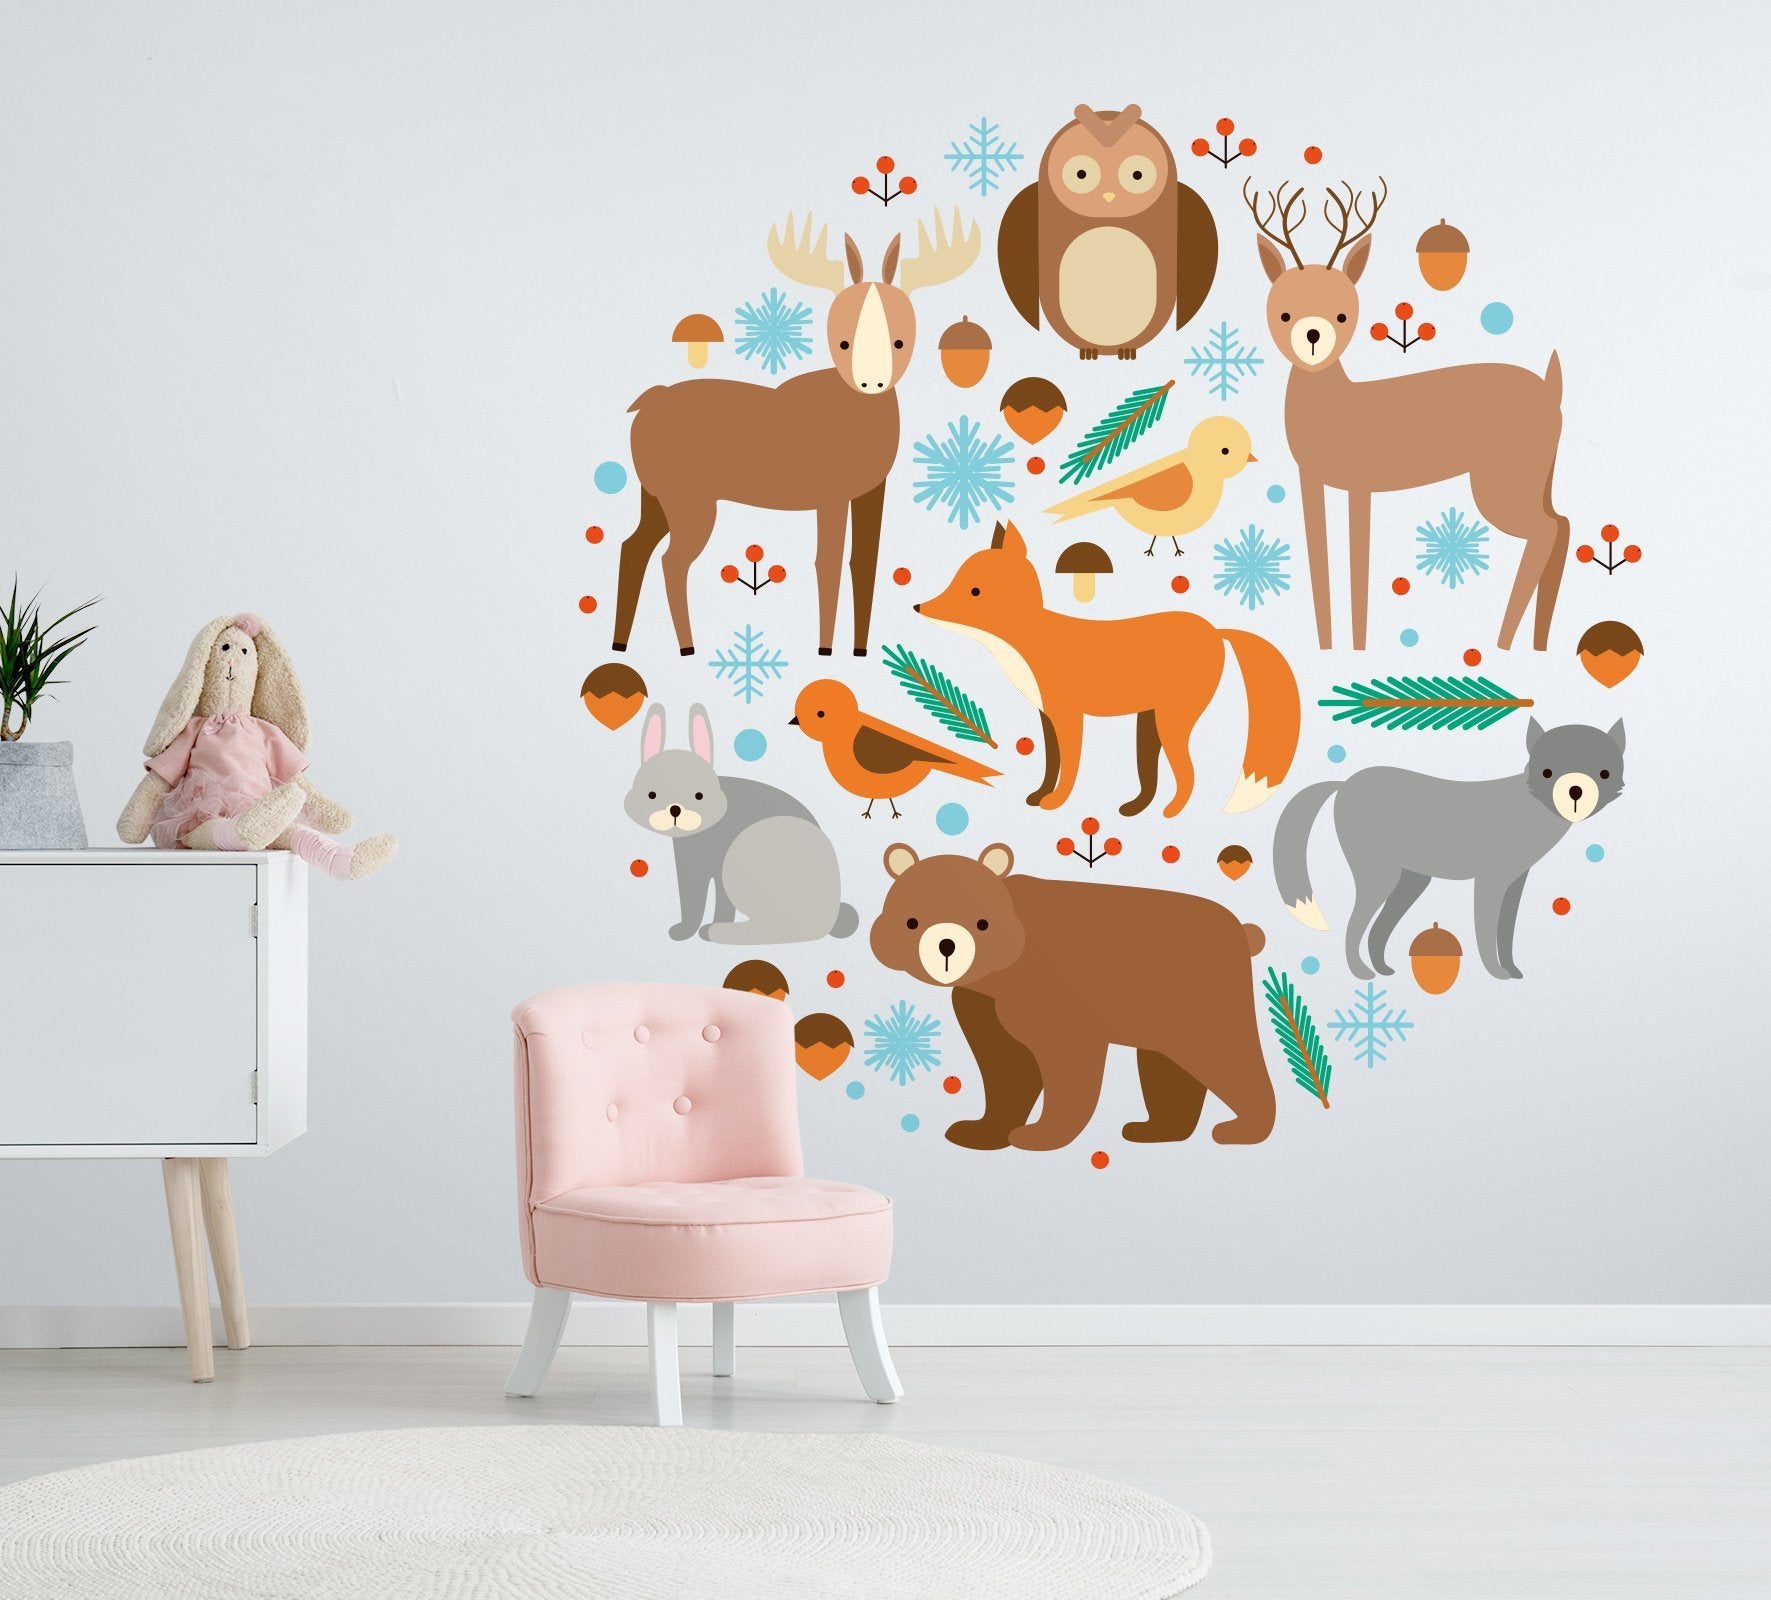 3D Cute Owl Monkey 168 Wall Stickers Wallpaper AJ Wallpaper 